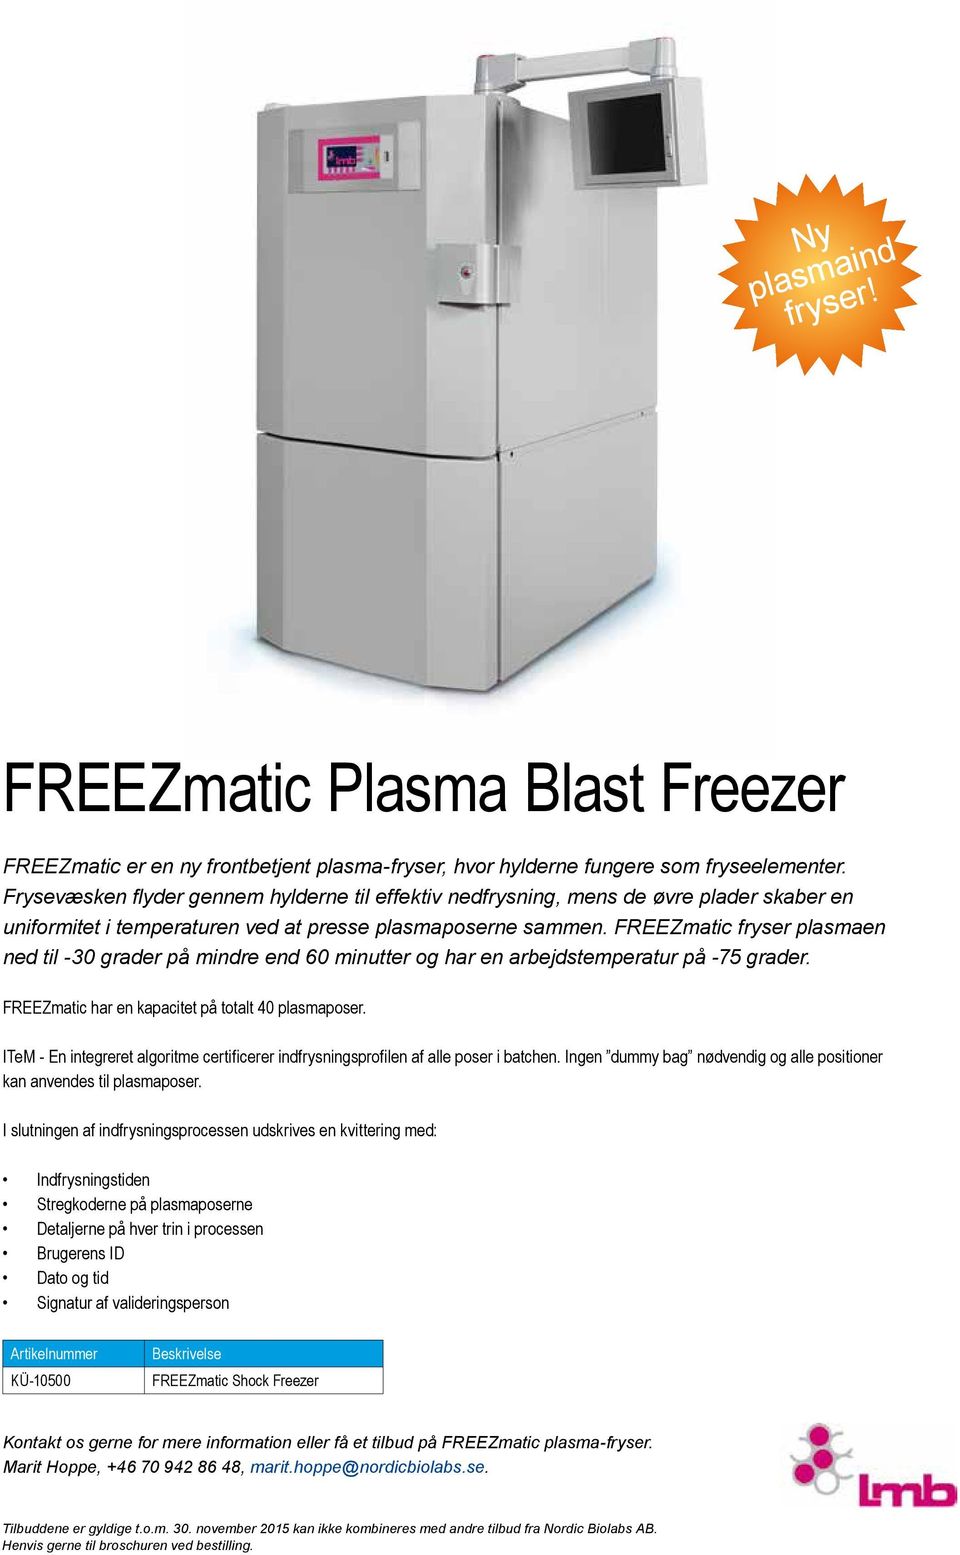 FREEZmatic fryser plasmaen ned til -30 grader på mindre end 60 minutter og har en arbejdstemperatur på -75 grader. FREEZmatic har en kapacitet på totalt 40 plasmaposer.